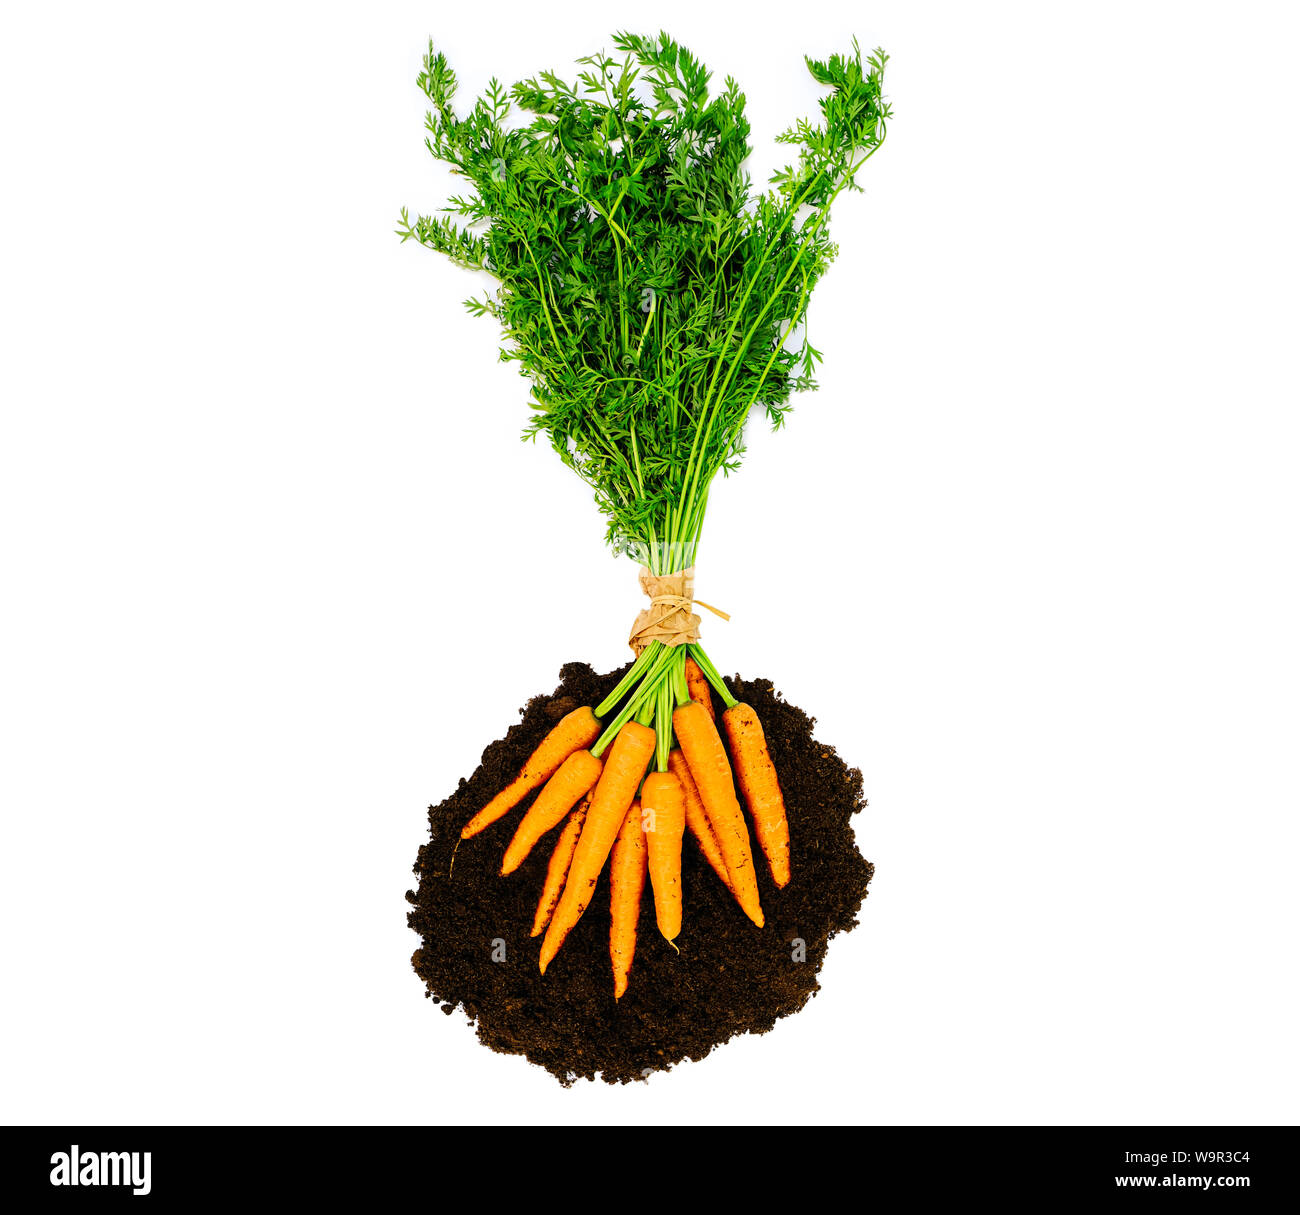 Botte de carottes fraîches couper. Légumes betteraves dans le sol, sur un fond blanc Banque D'Images